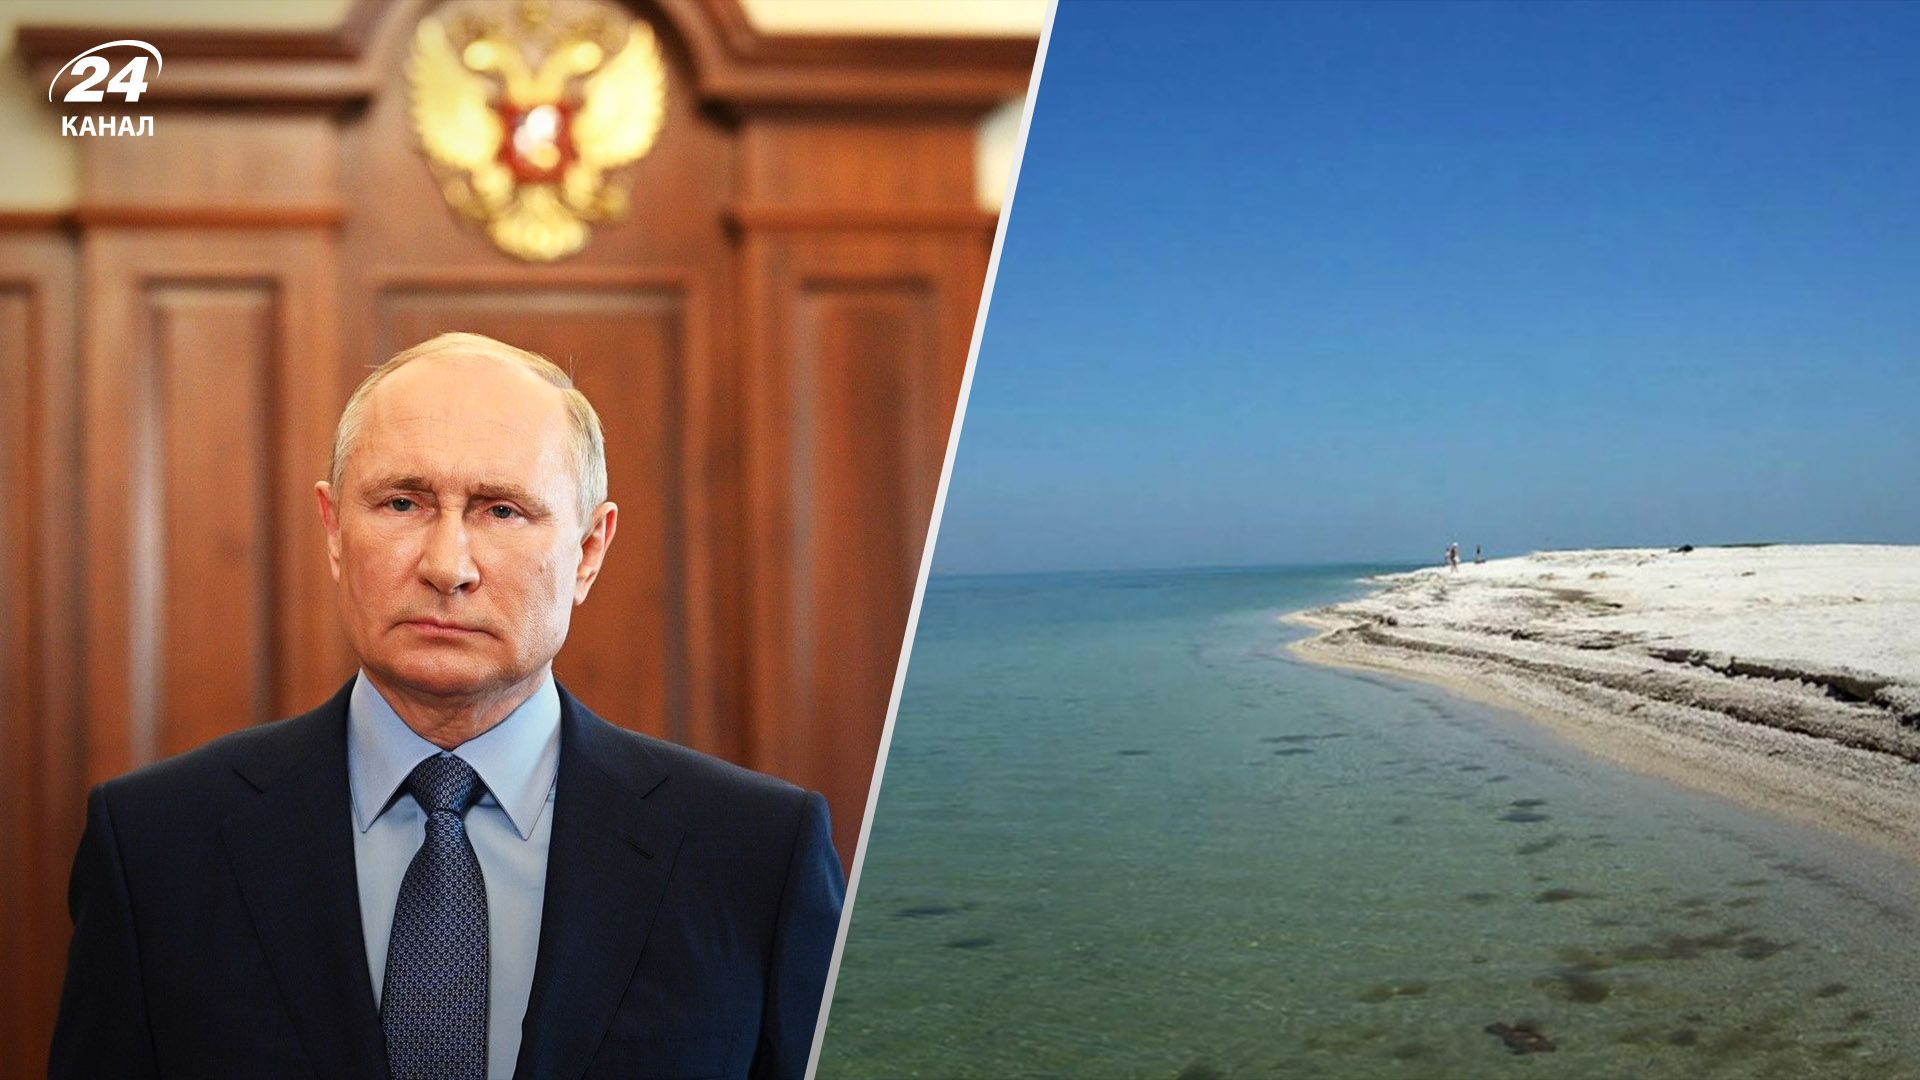 Путин заявил, что Азовское море принадлежит России и денонсировал договор с Украиной - 24 Канал